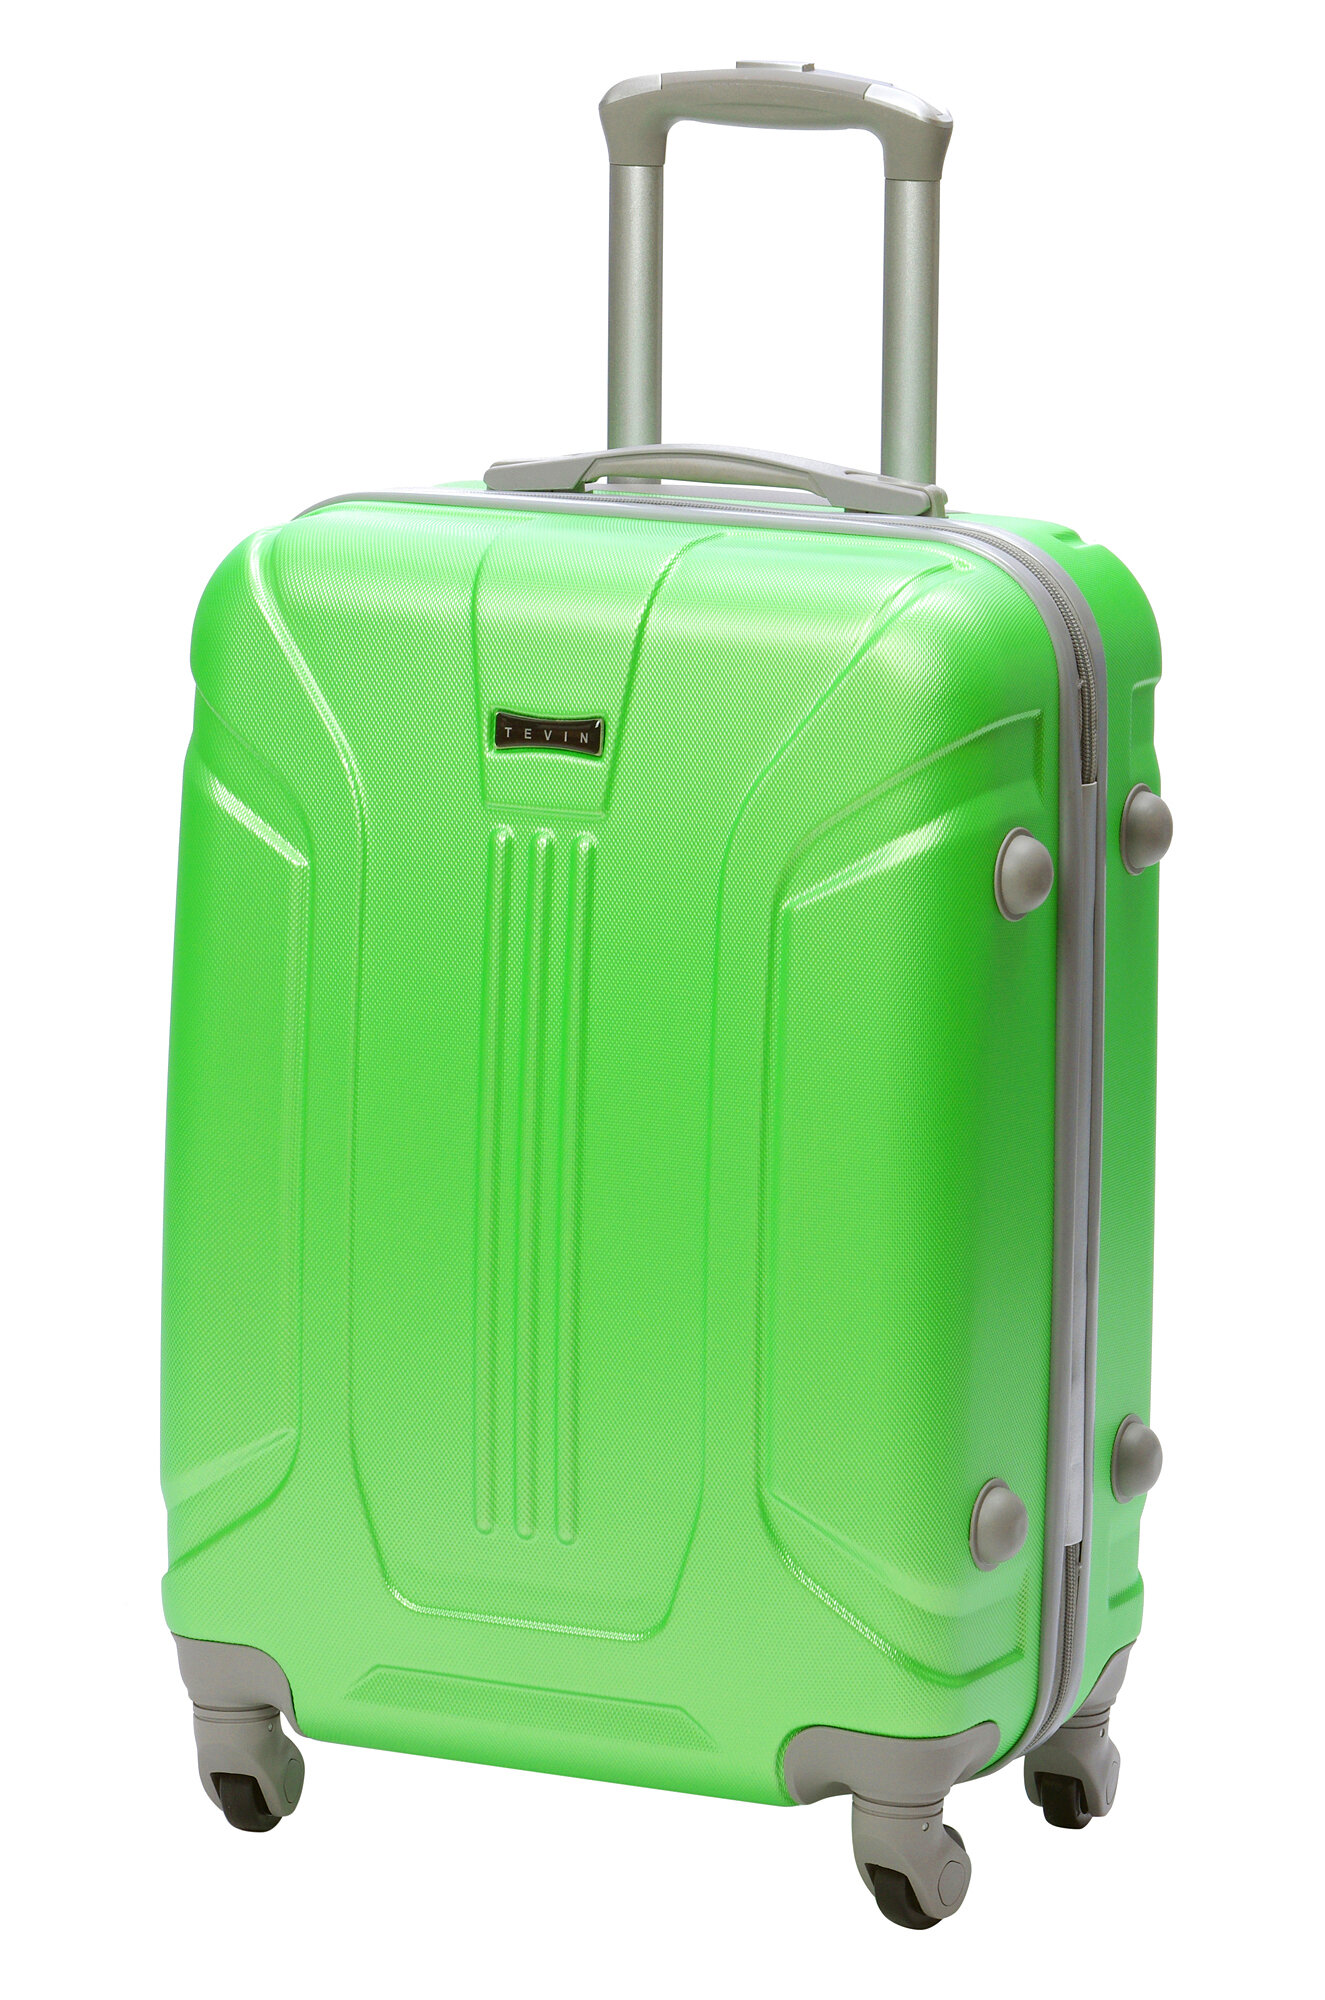 Чемодан на колесах дорожный средний багаж на двоих для путешествий m+ TEVIN размер М+ 68 см 77 л легкий 3.7 кг прочный abs пластик Зеленый яркий неон